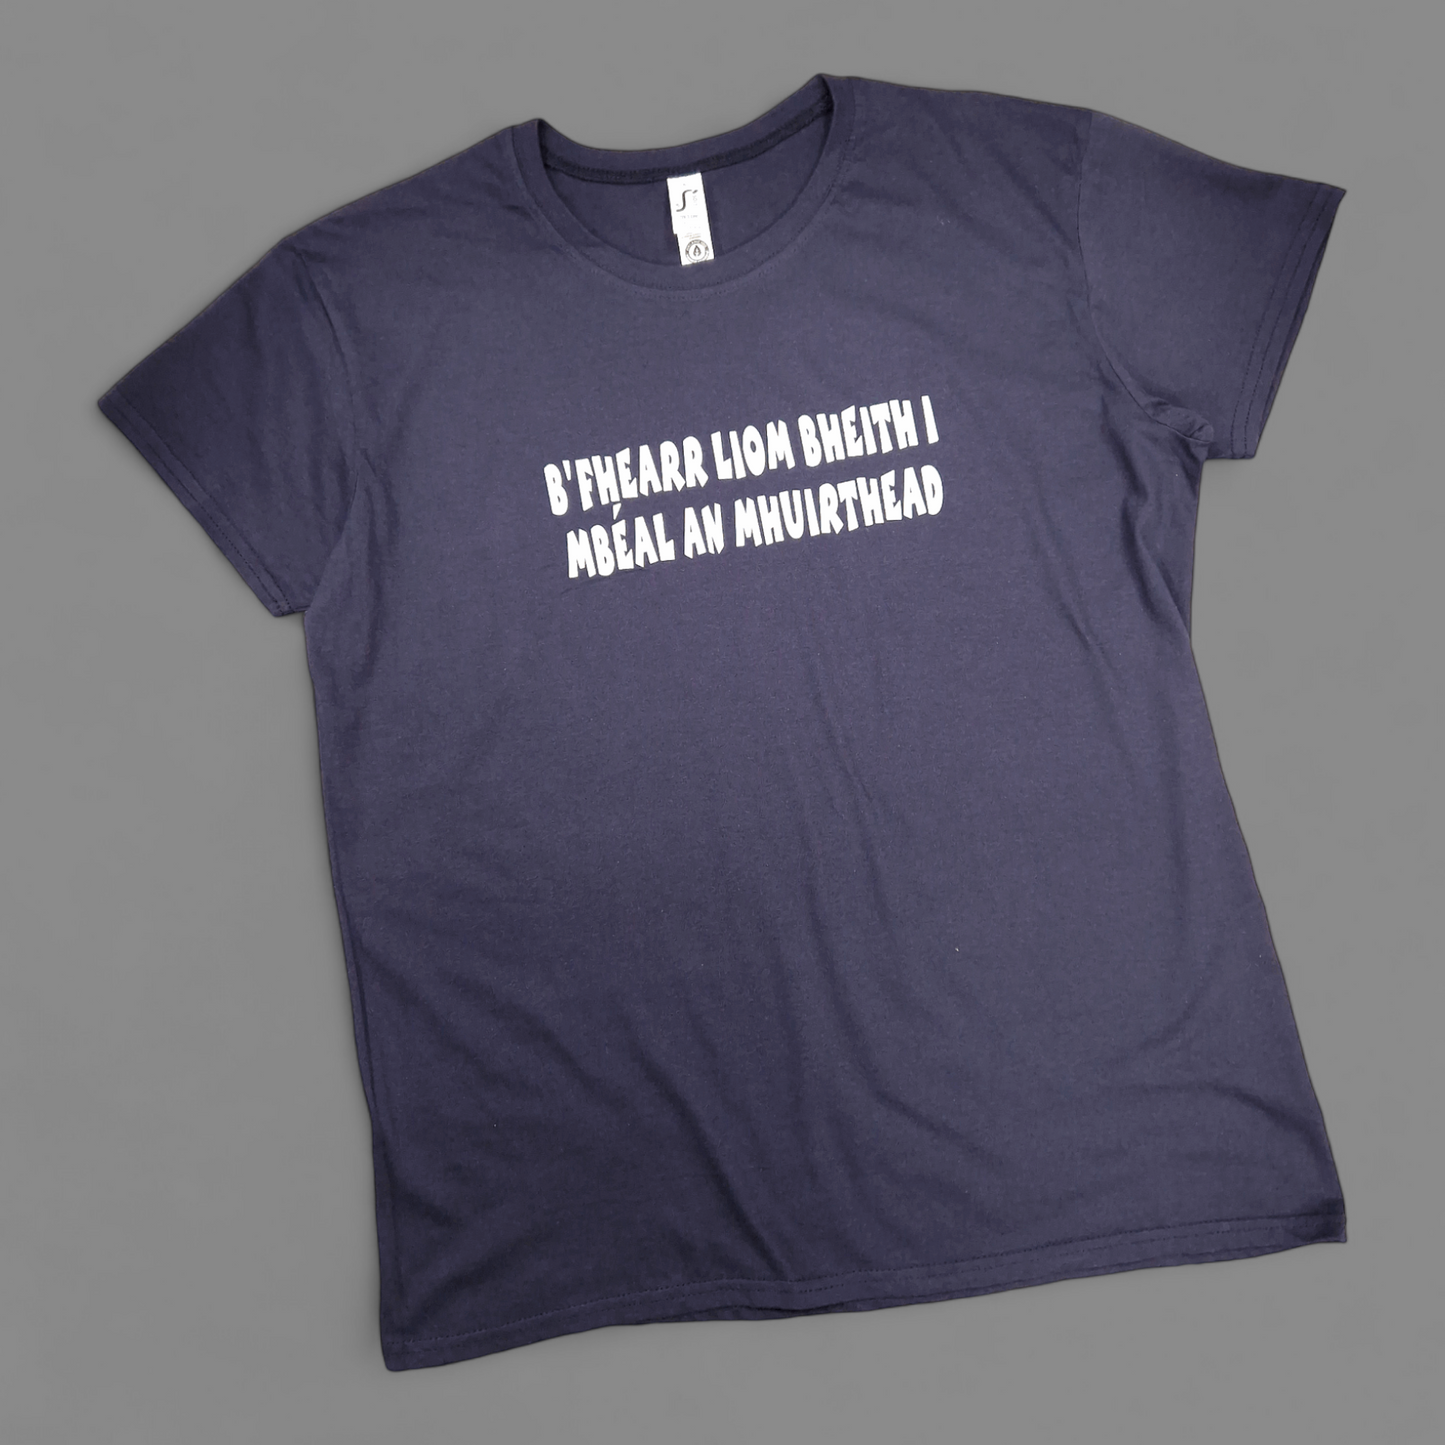 T-Shirt - Adult XL - B'Fhearr liom bheith i mBéal an Mhuirthead - Navy